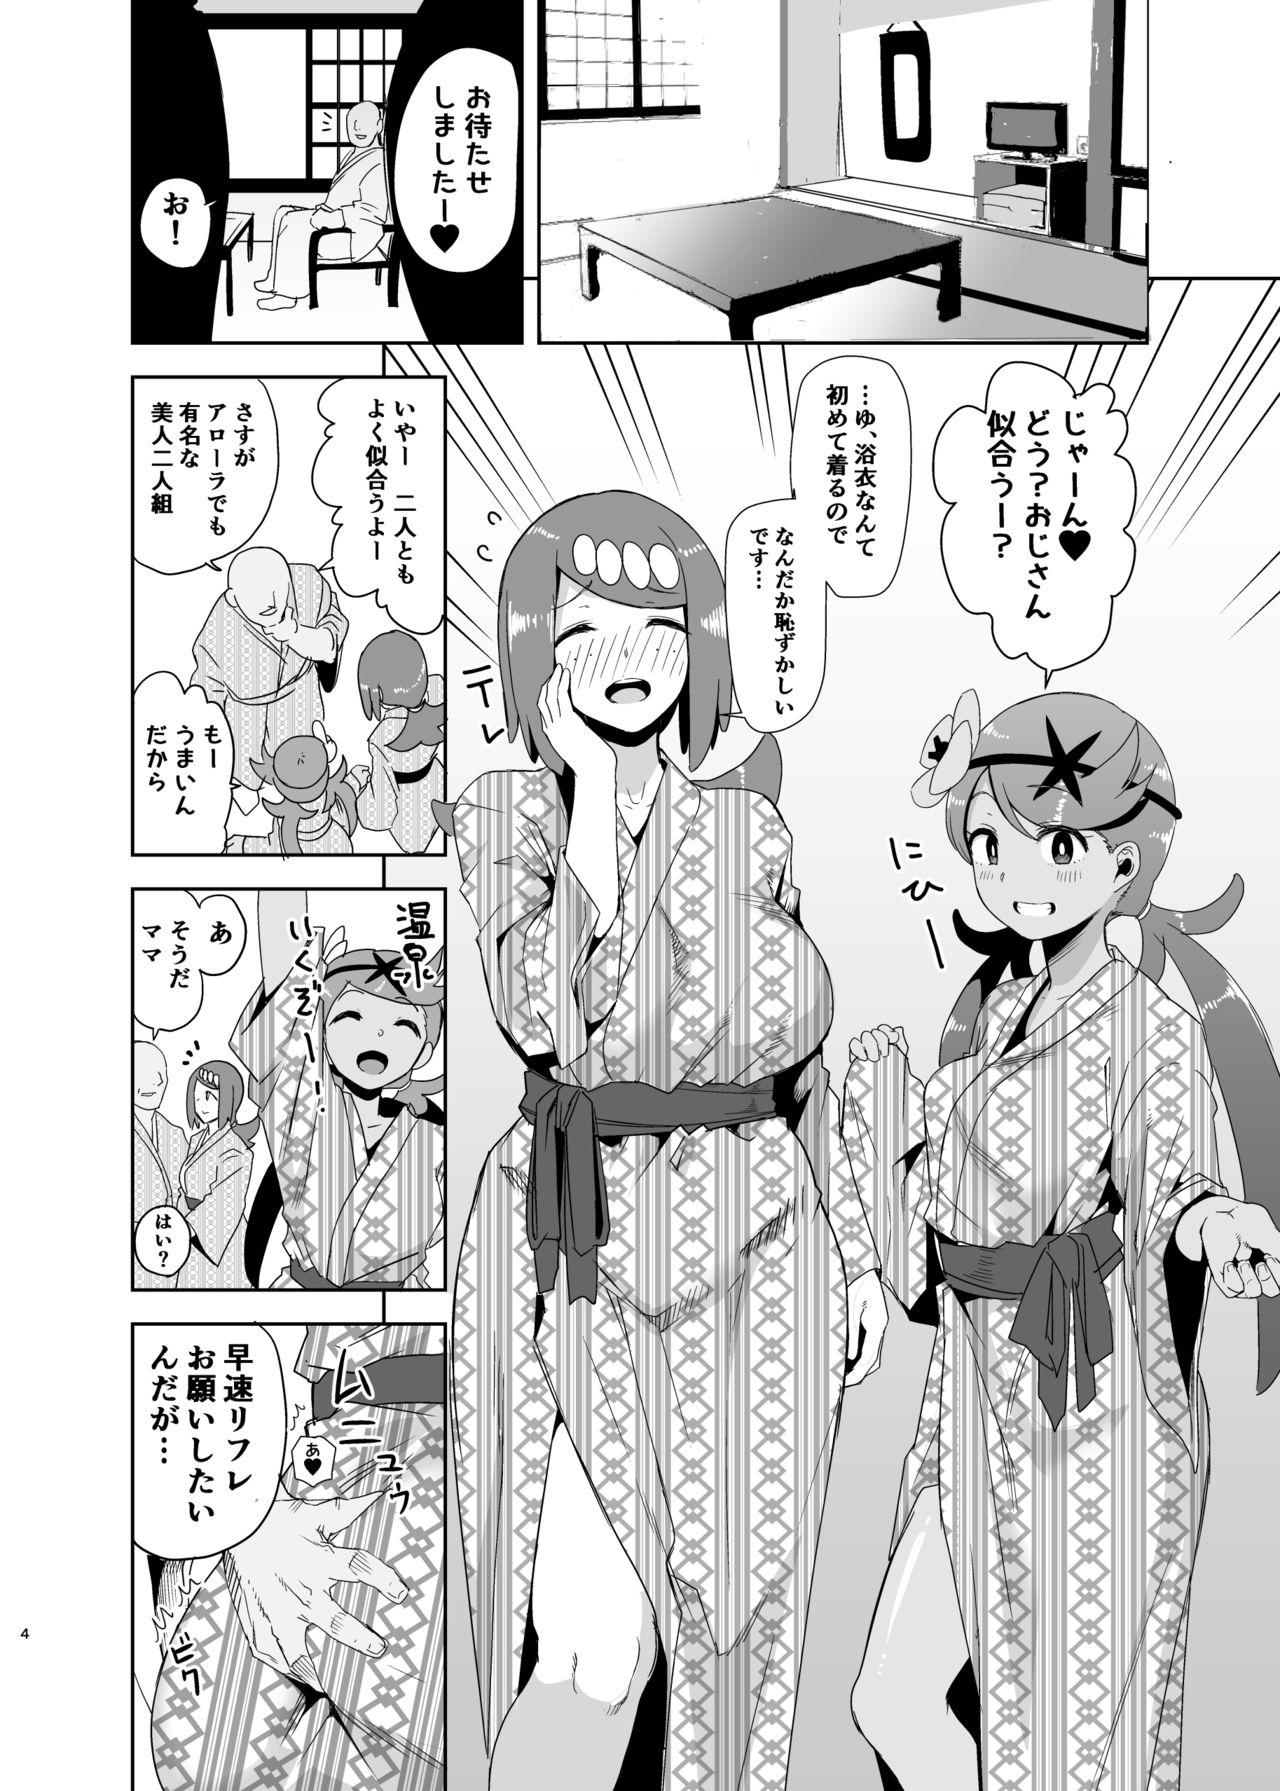 Sextoys Alola no Yoru no Sugata 2 - Pokemon Tributo - Page 3